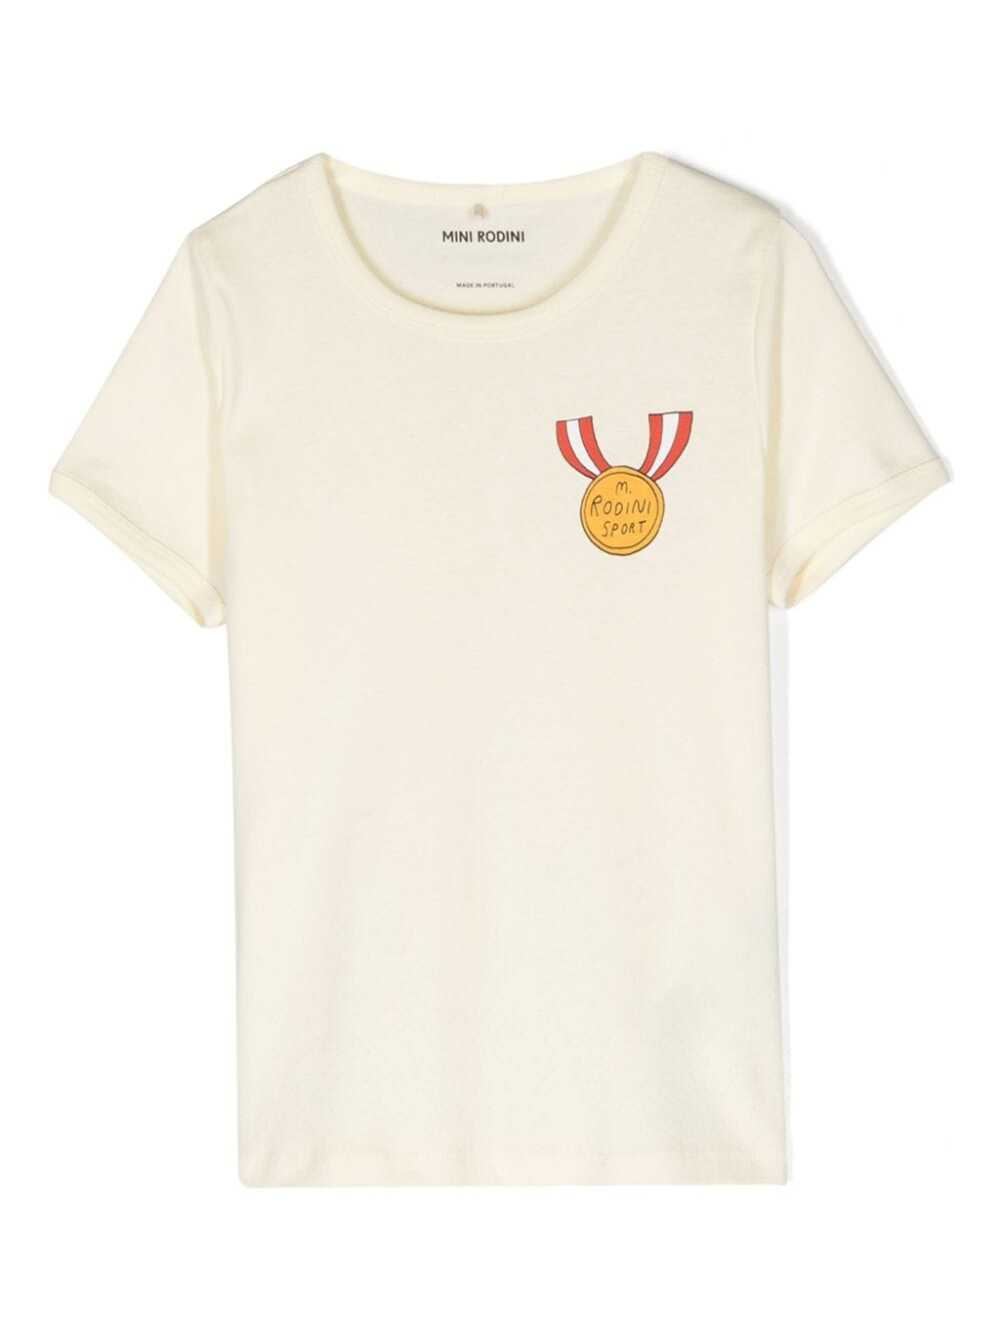 Mini Rodini Kids' Medal T-shirt In White